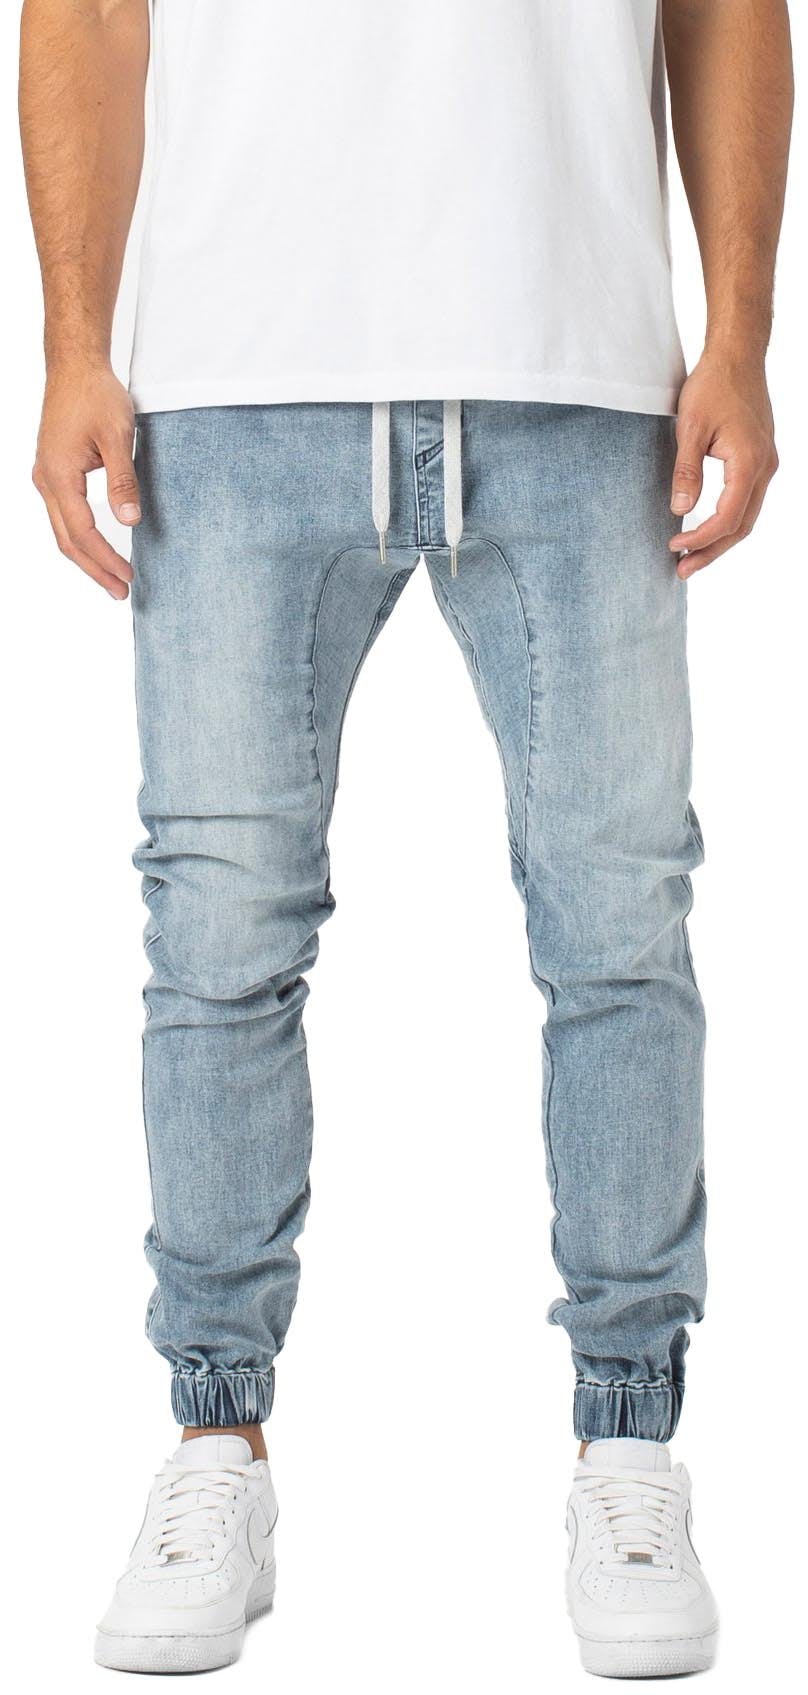 Numéro de l'image de la galerie de produits 1 pour le produit Pantalon de jogging Sureshot Denim - Homme